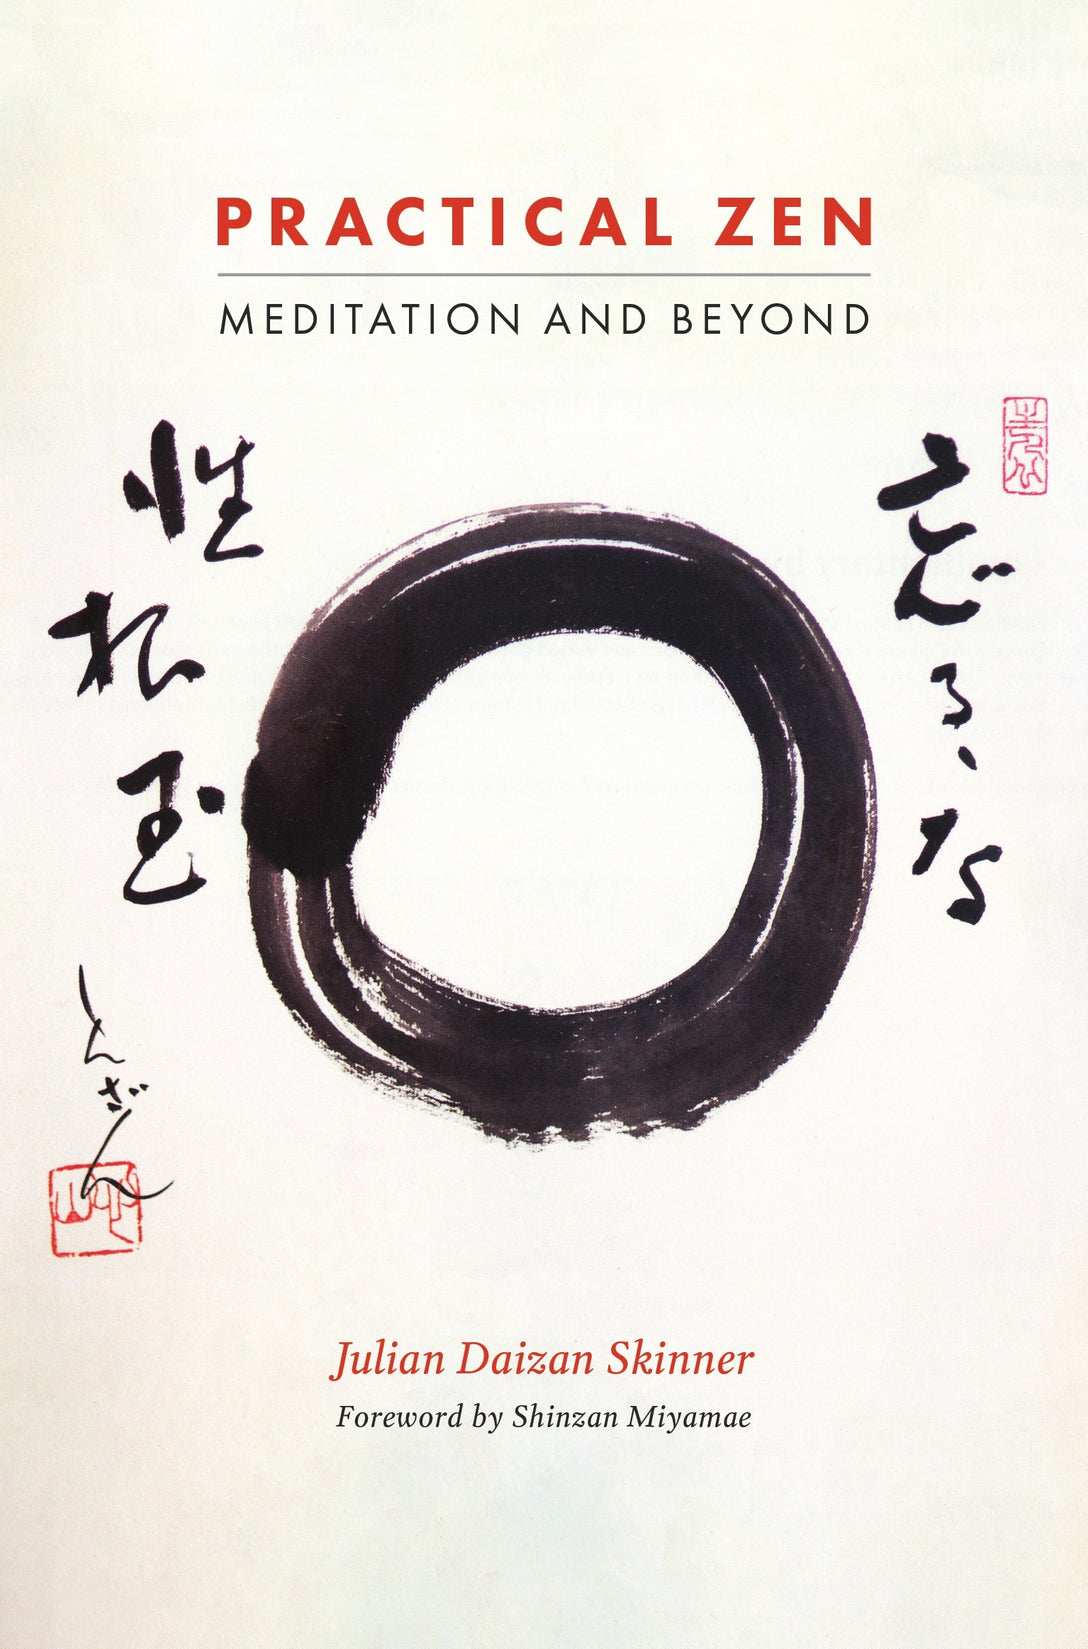 Practical Zen by Julian Daizan Skinner, Shinzan Miyamae